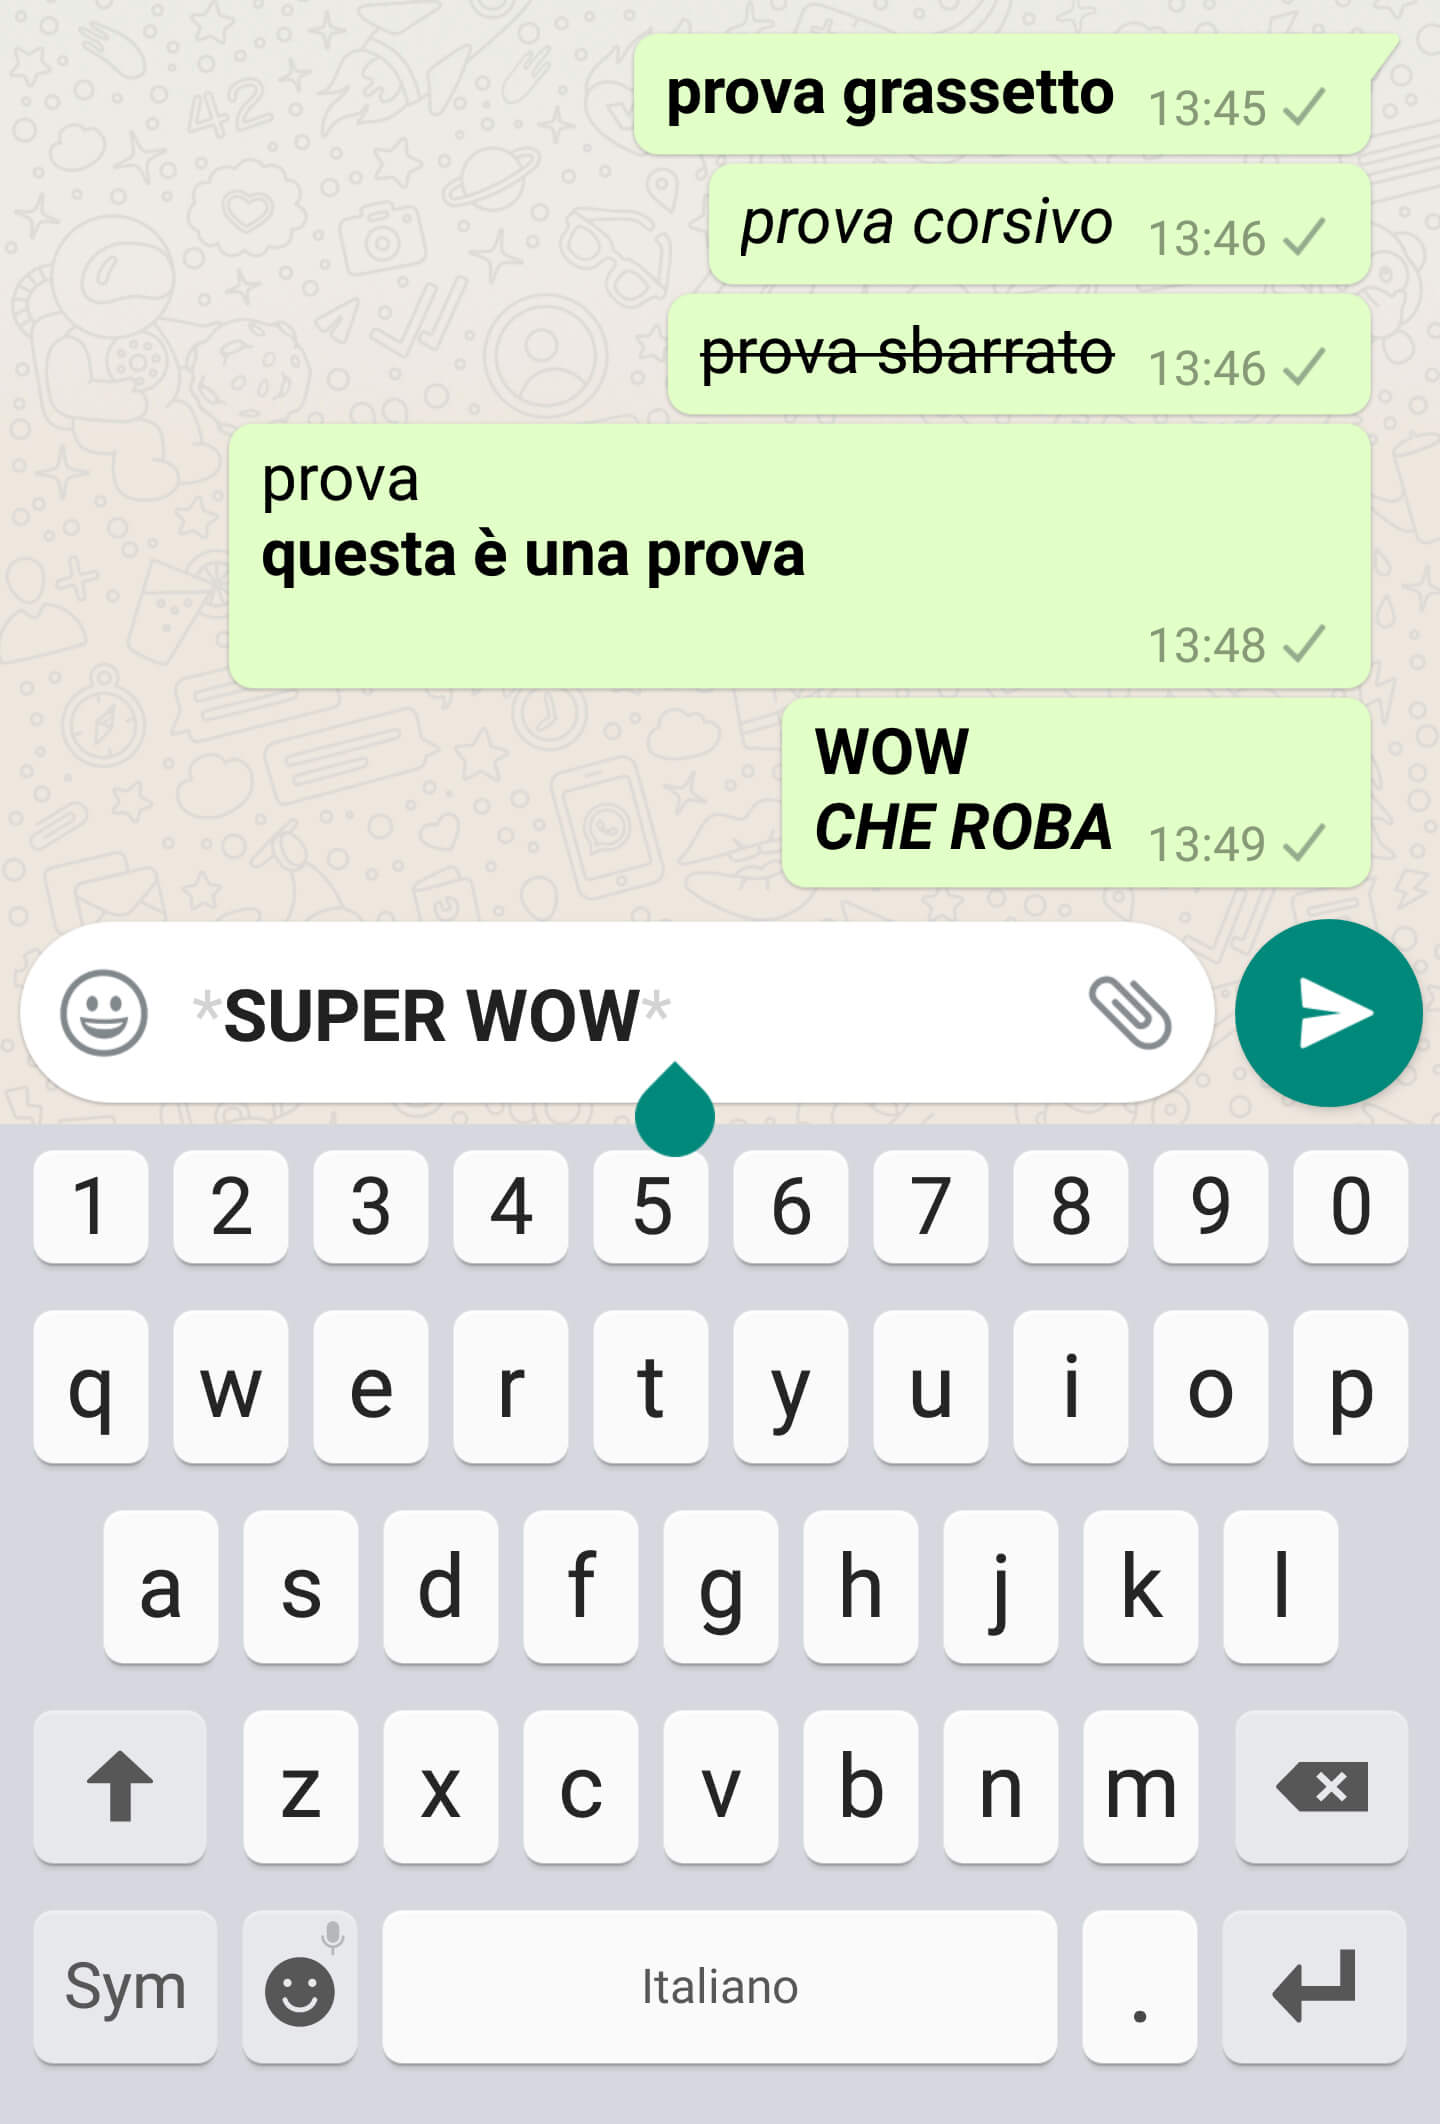 15 Trucchi e Segreti Whatsapp: Stupisci i tuoi amici!